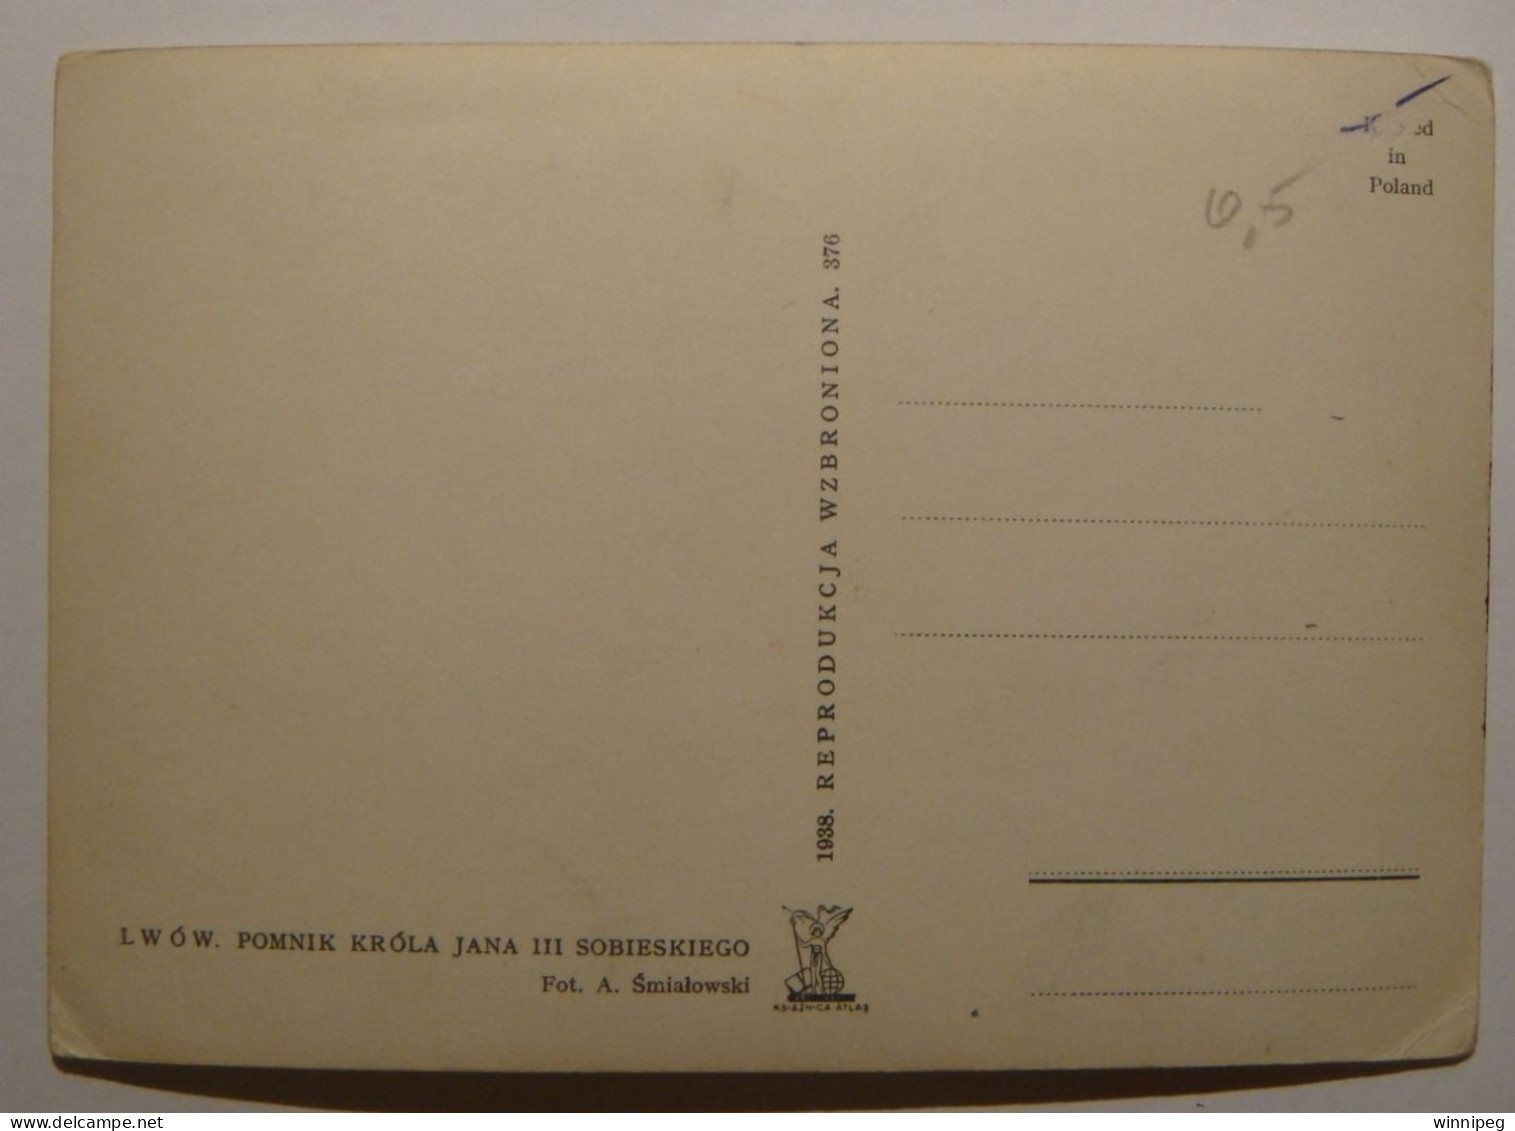 Lwow.2 Pc's.Pomnik Krola Jana III Sobieskiego.Atlas,1938,#376.Pomnik Sobieskiego.Naklad DG.1911.Poland.Ukraine - Ukraine